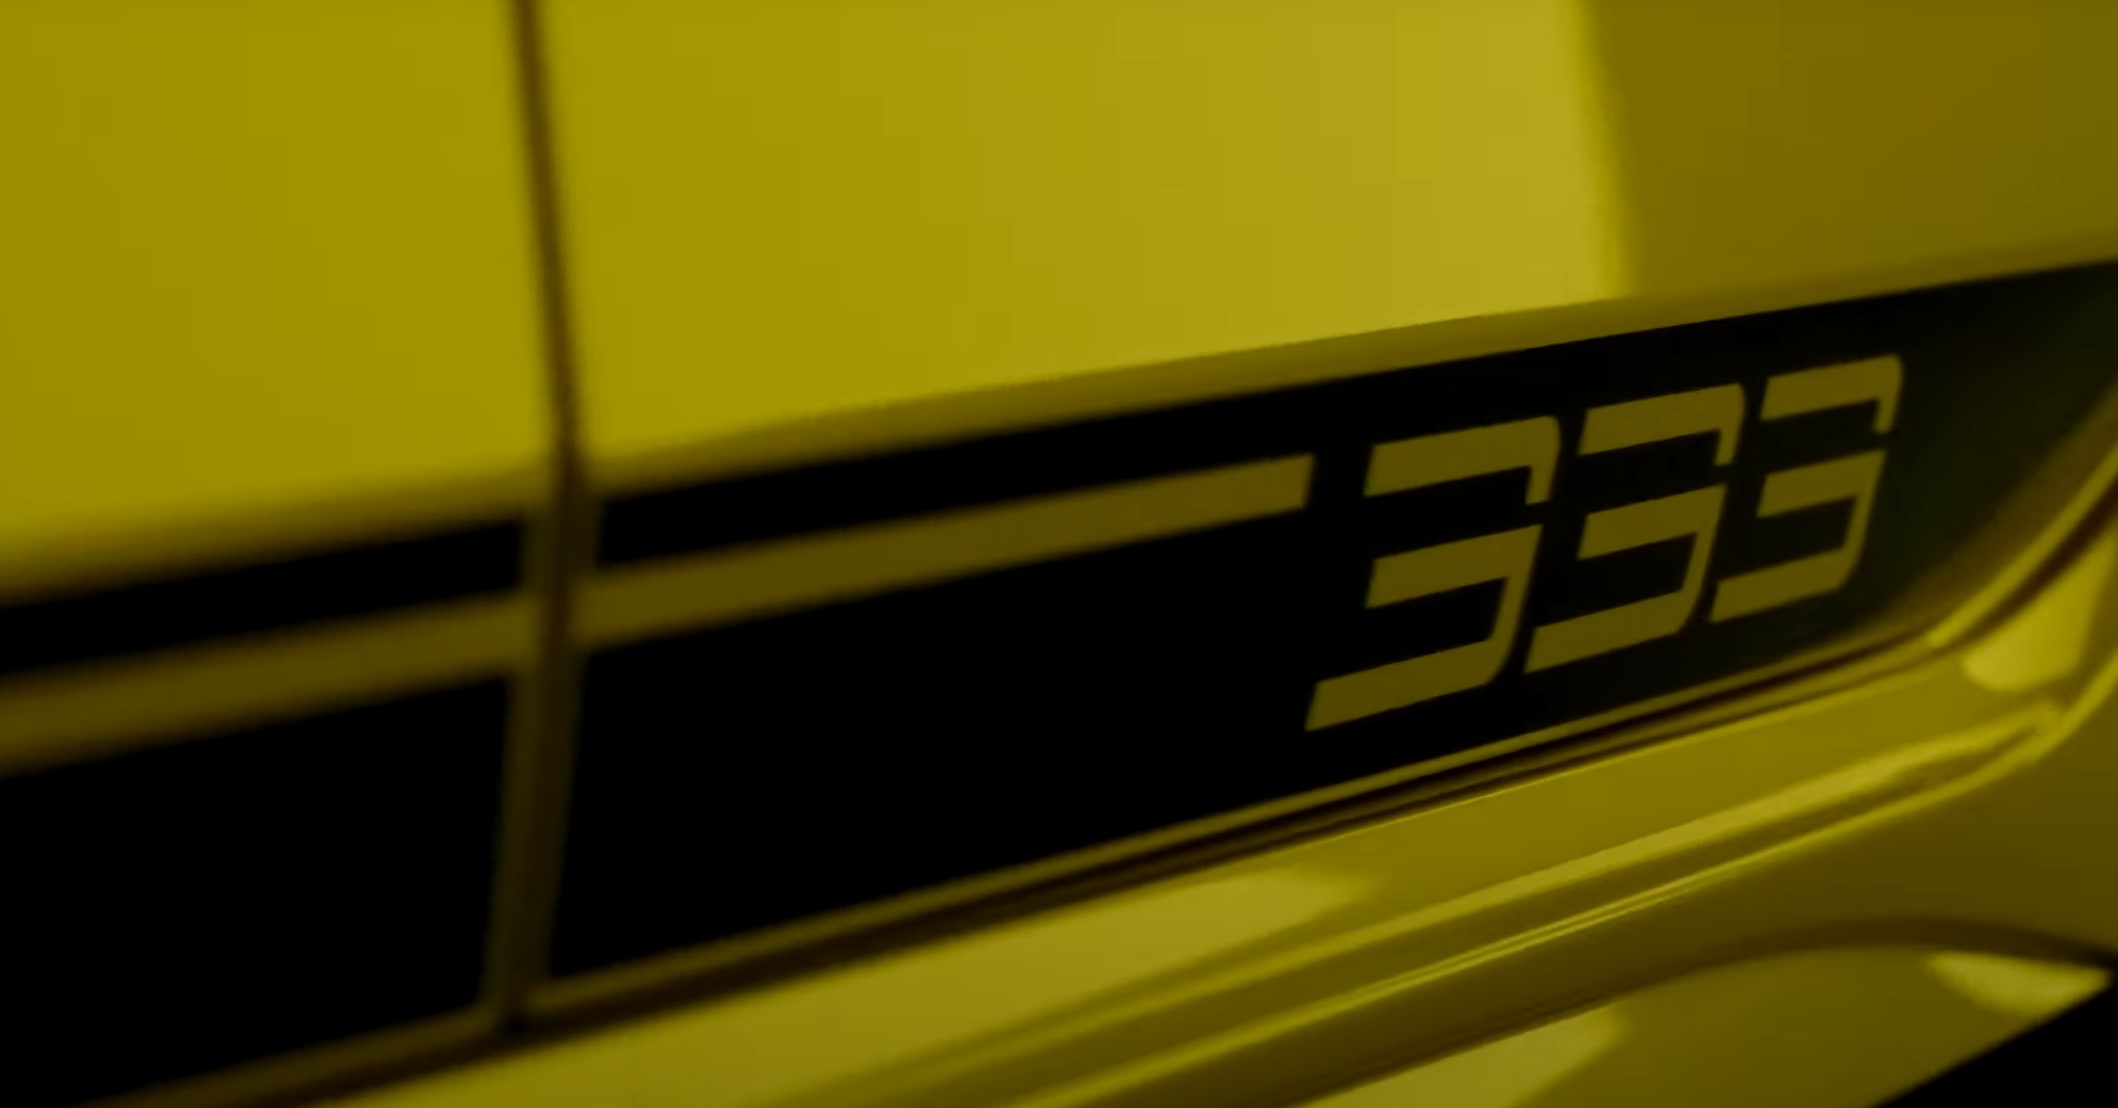 폭스바겐은 슈퍼 핫 해치 골프 R 20을 기반으로 출력을 329hp로 업그레이드 한 엔진과 독특한 스타일링 디테일을 더한 리미티드 에디션 골프 R의 티저를 공개했다.